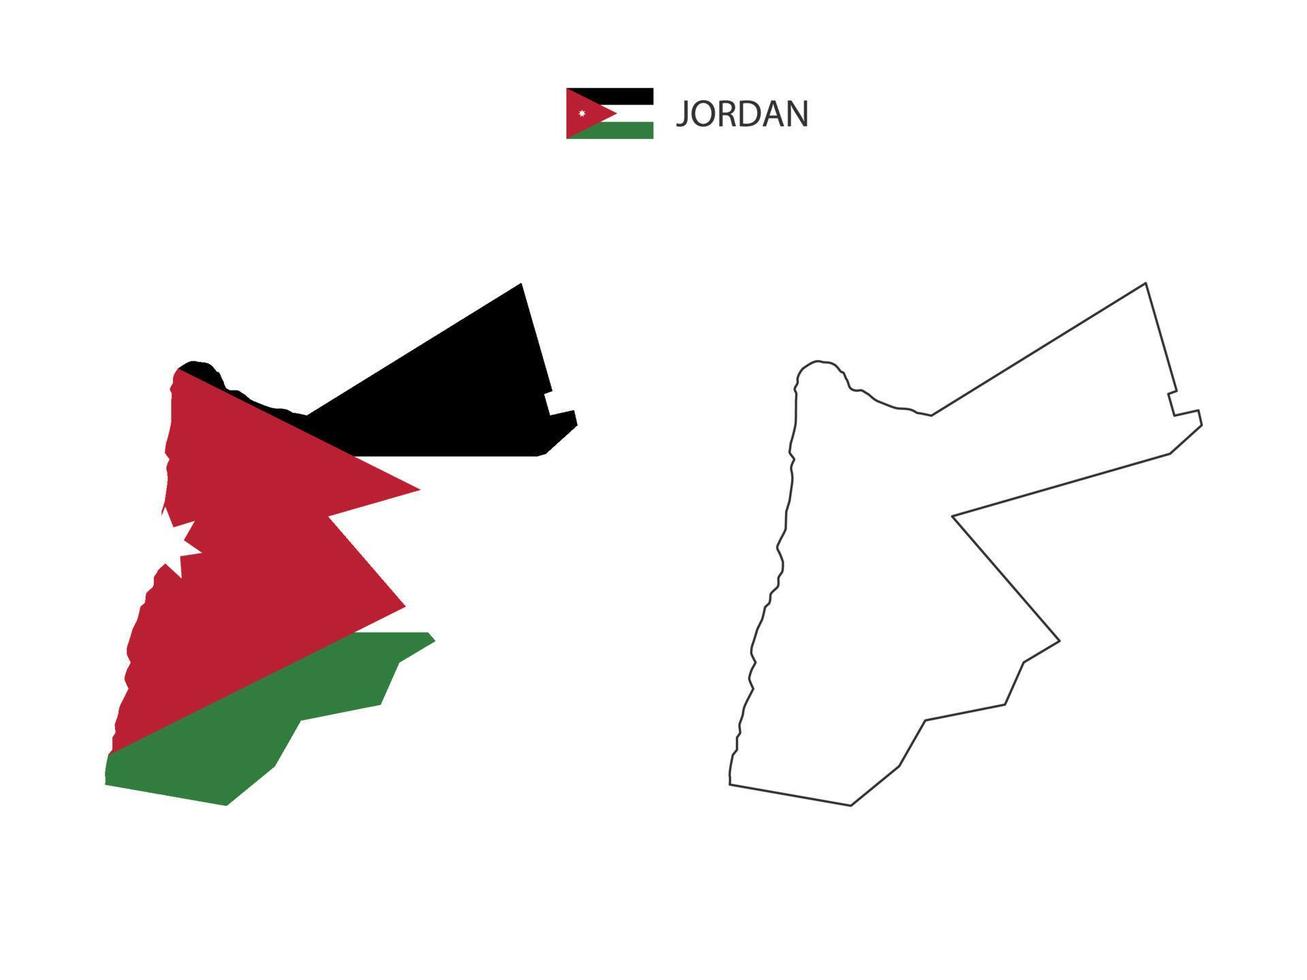 jordan carte ville vecteur divisé par style de simplicité de contour. ont 2 versions, la version en ligne fine noire et la couleur de la version du drapeau du pays. les deux cartes étaient sur fond blanc.